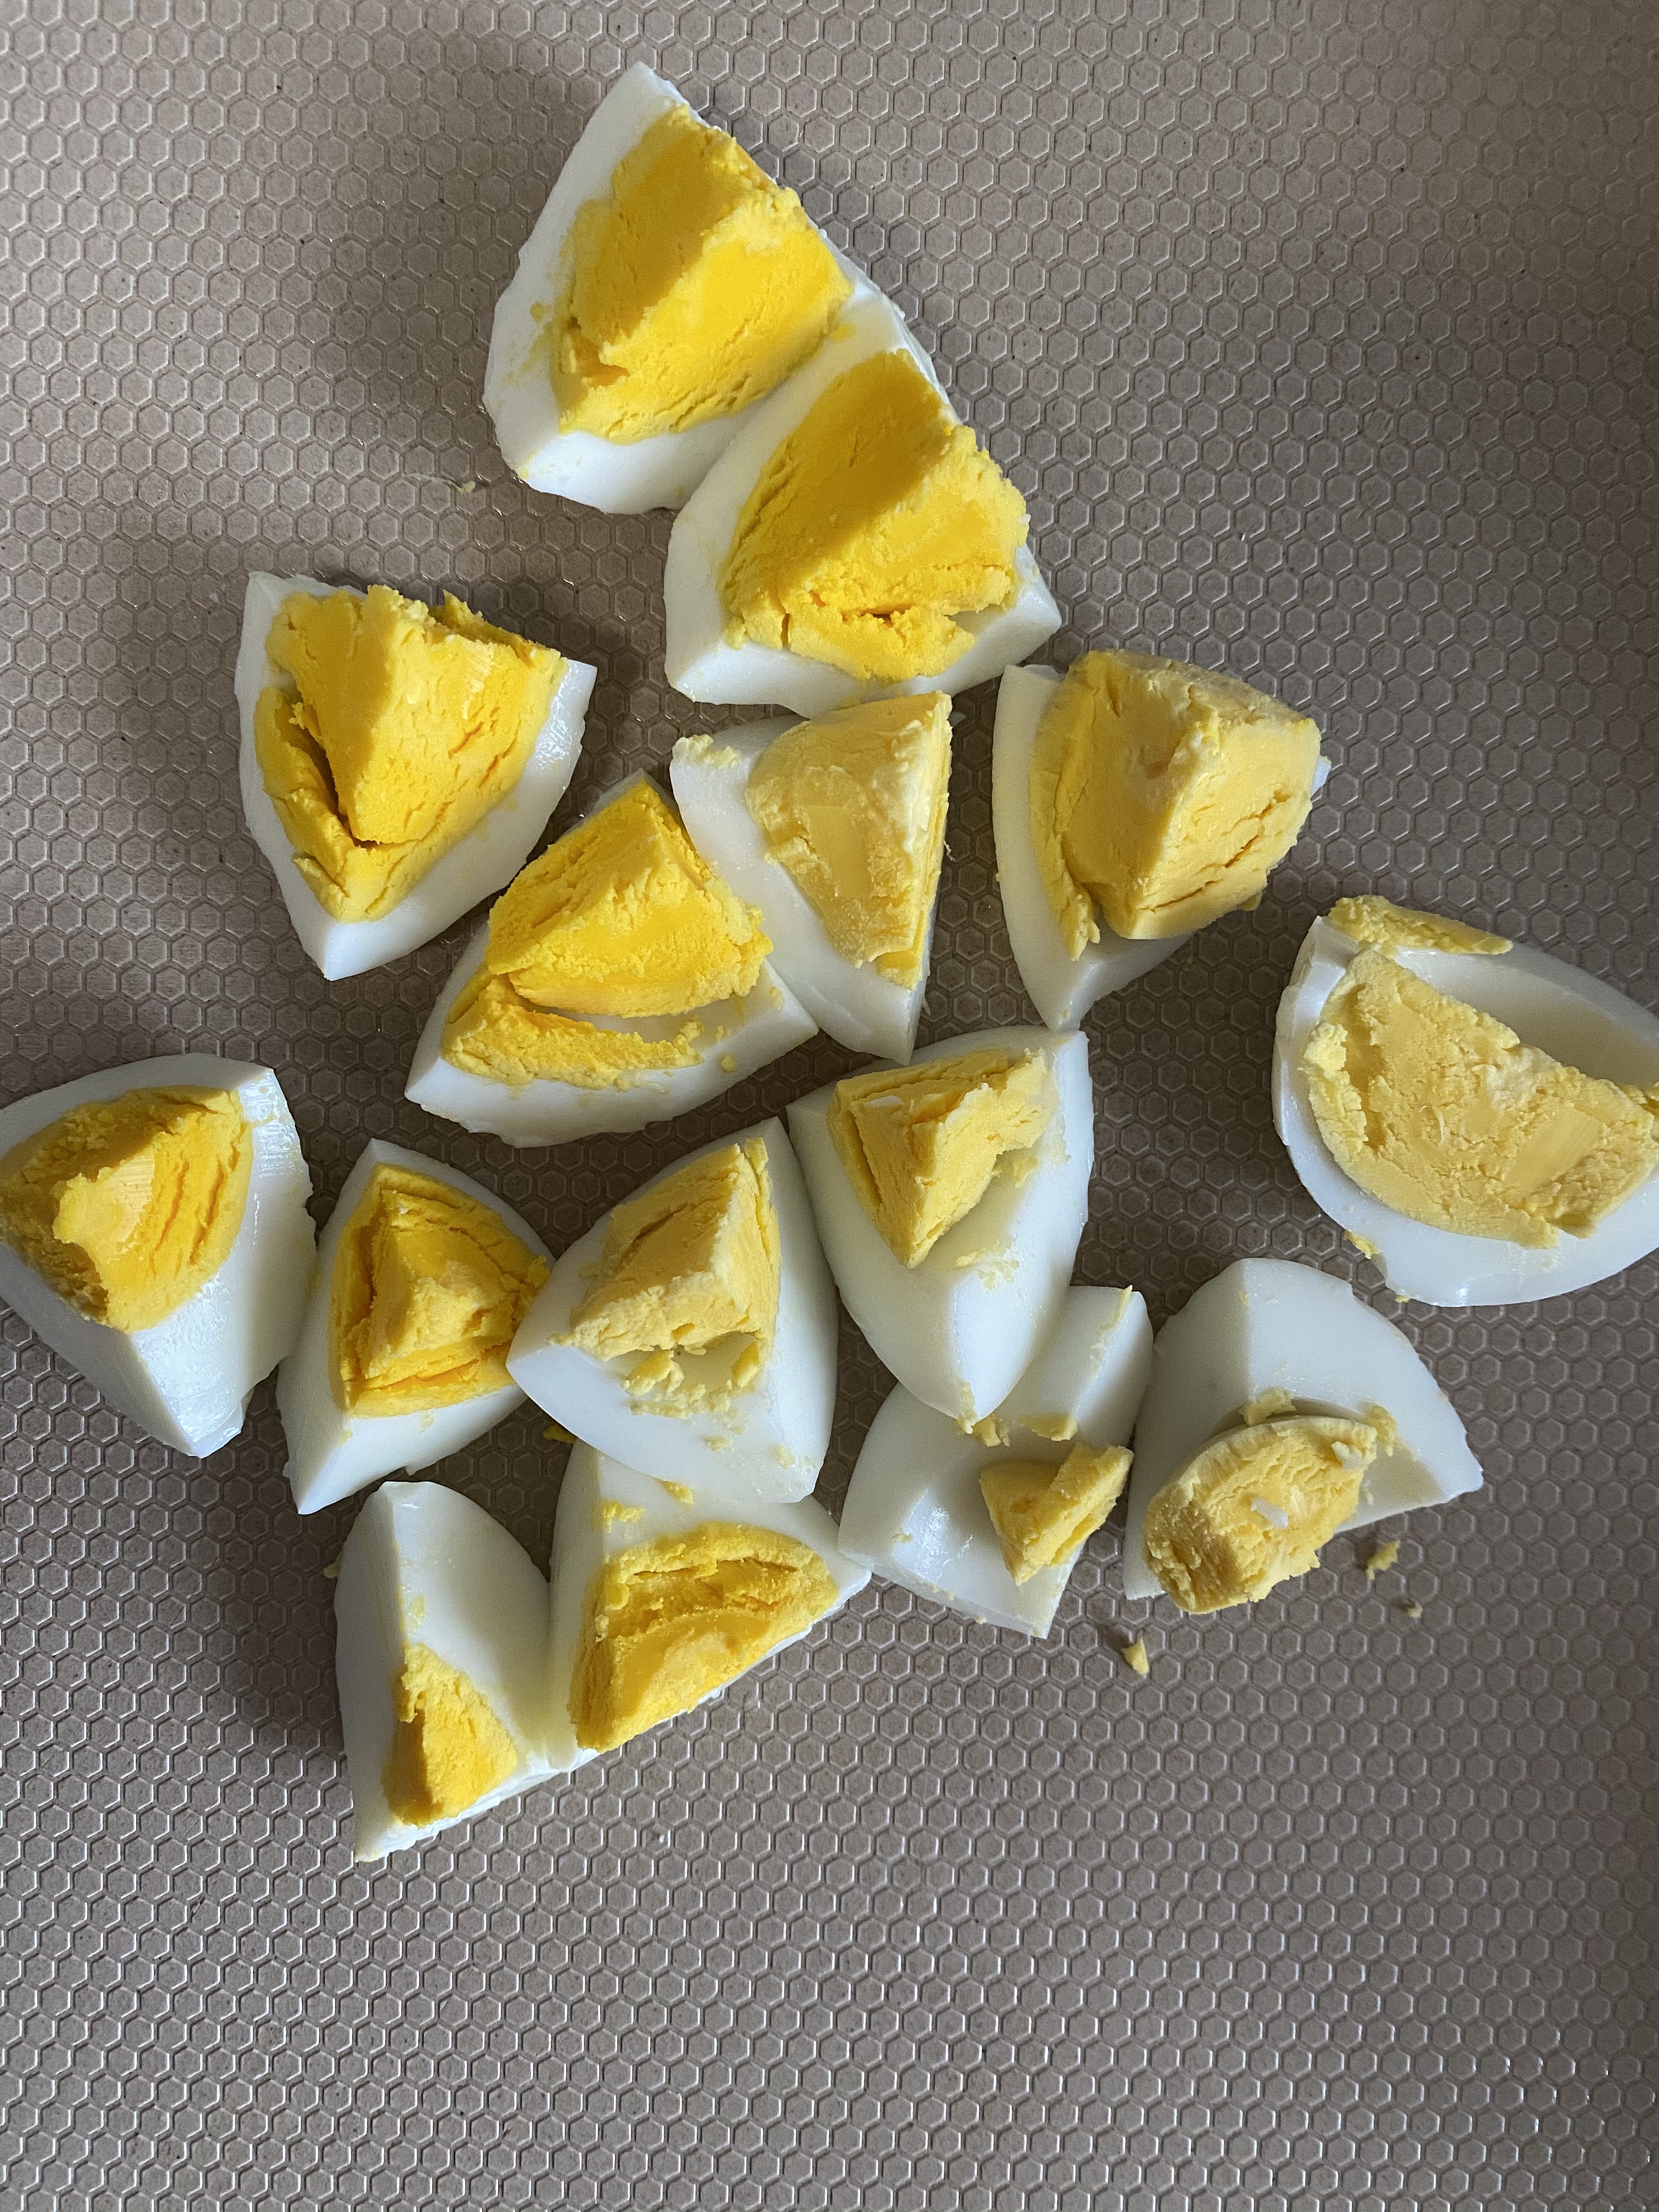 上班族?‍?自带减脂餐便当?的第n天-鸡蛋黄瓜牛排沙拉的做法 步骤3